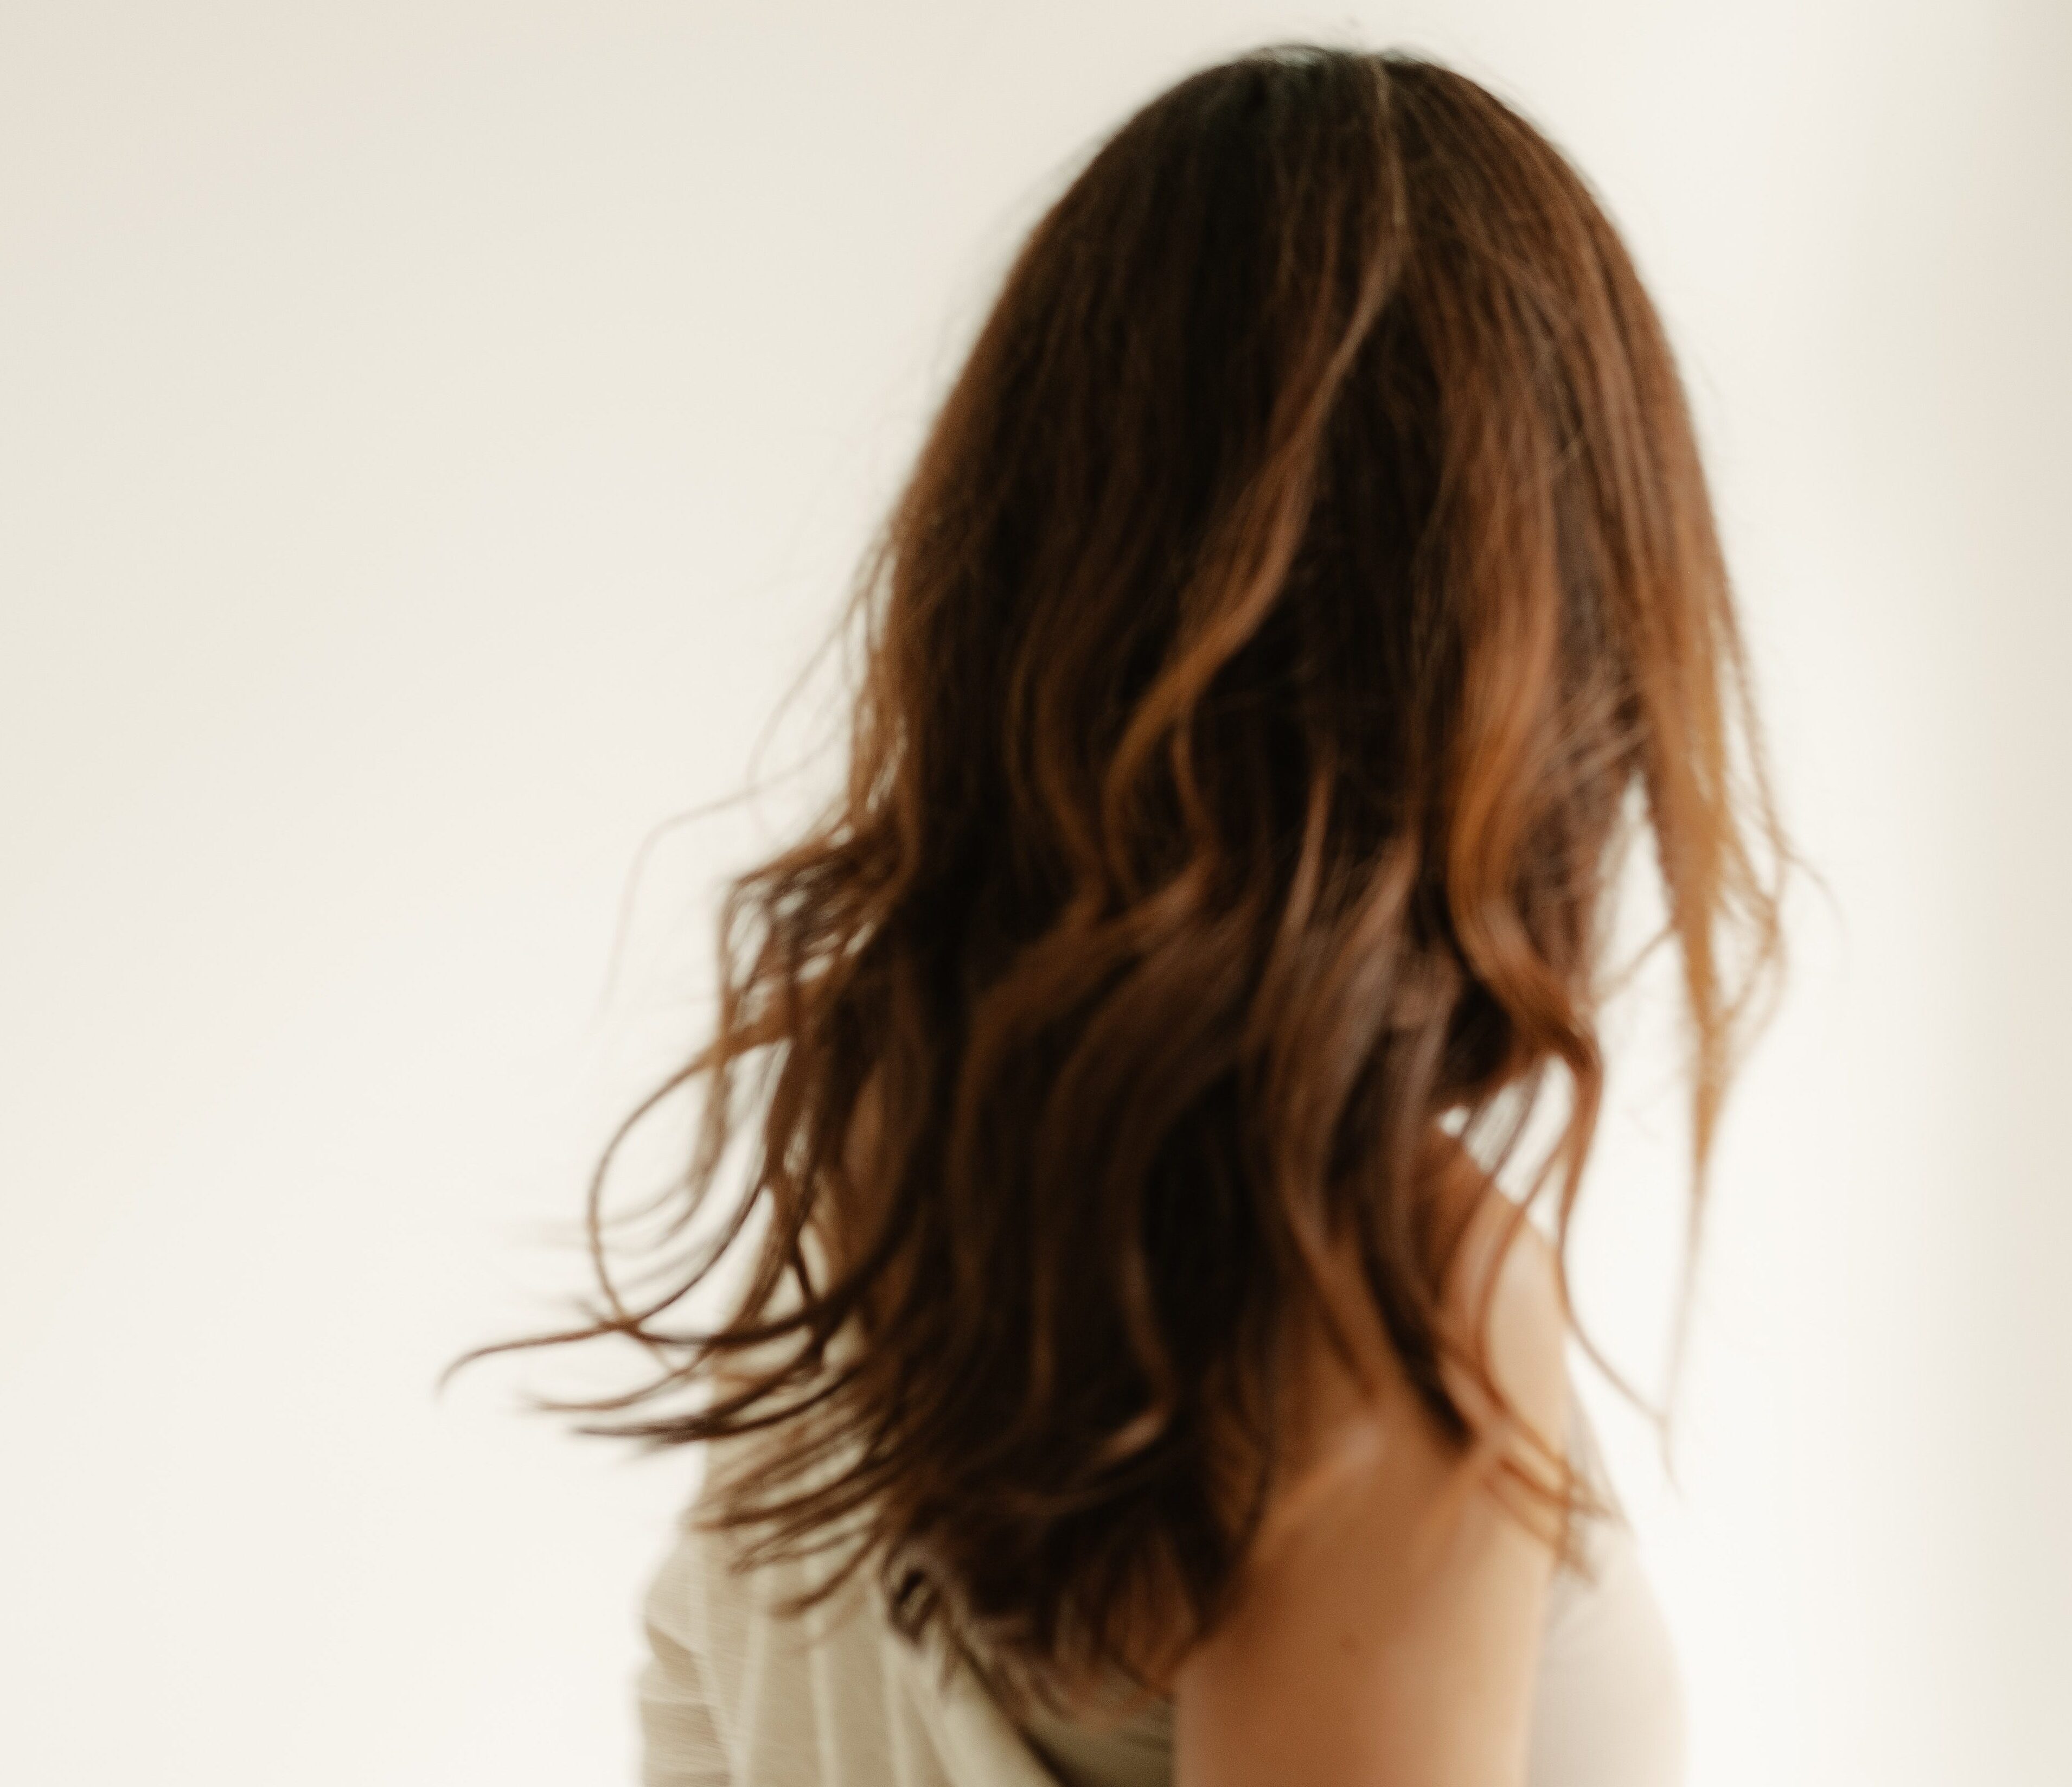 Πώς να μακρύνεις τα μαλλιά σου πιο γρήγορα- 7 αλάνθαστες συμβουλές από επαγγελματίες κομμωτές